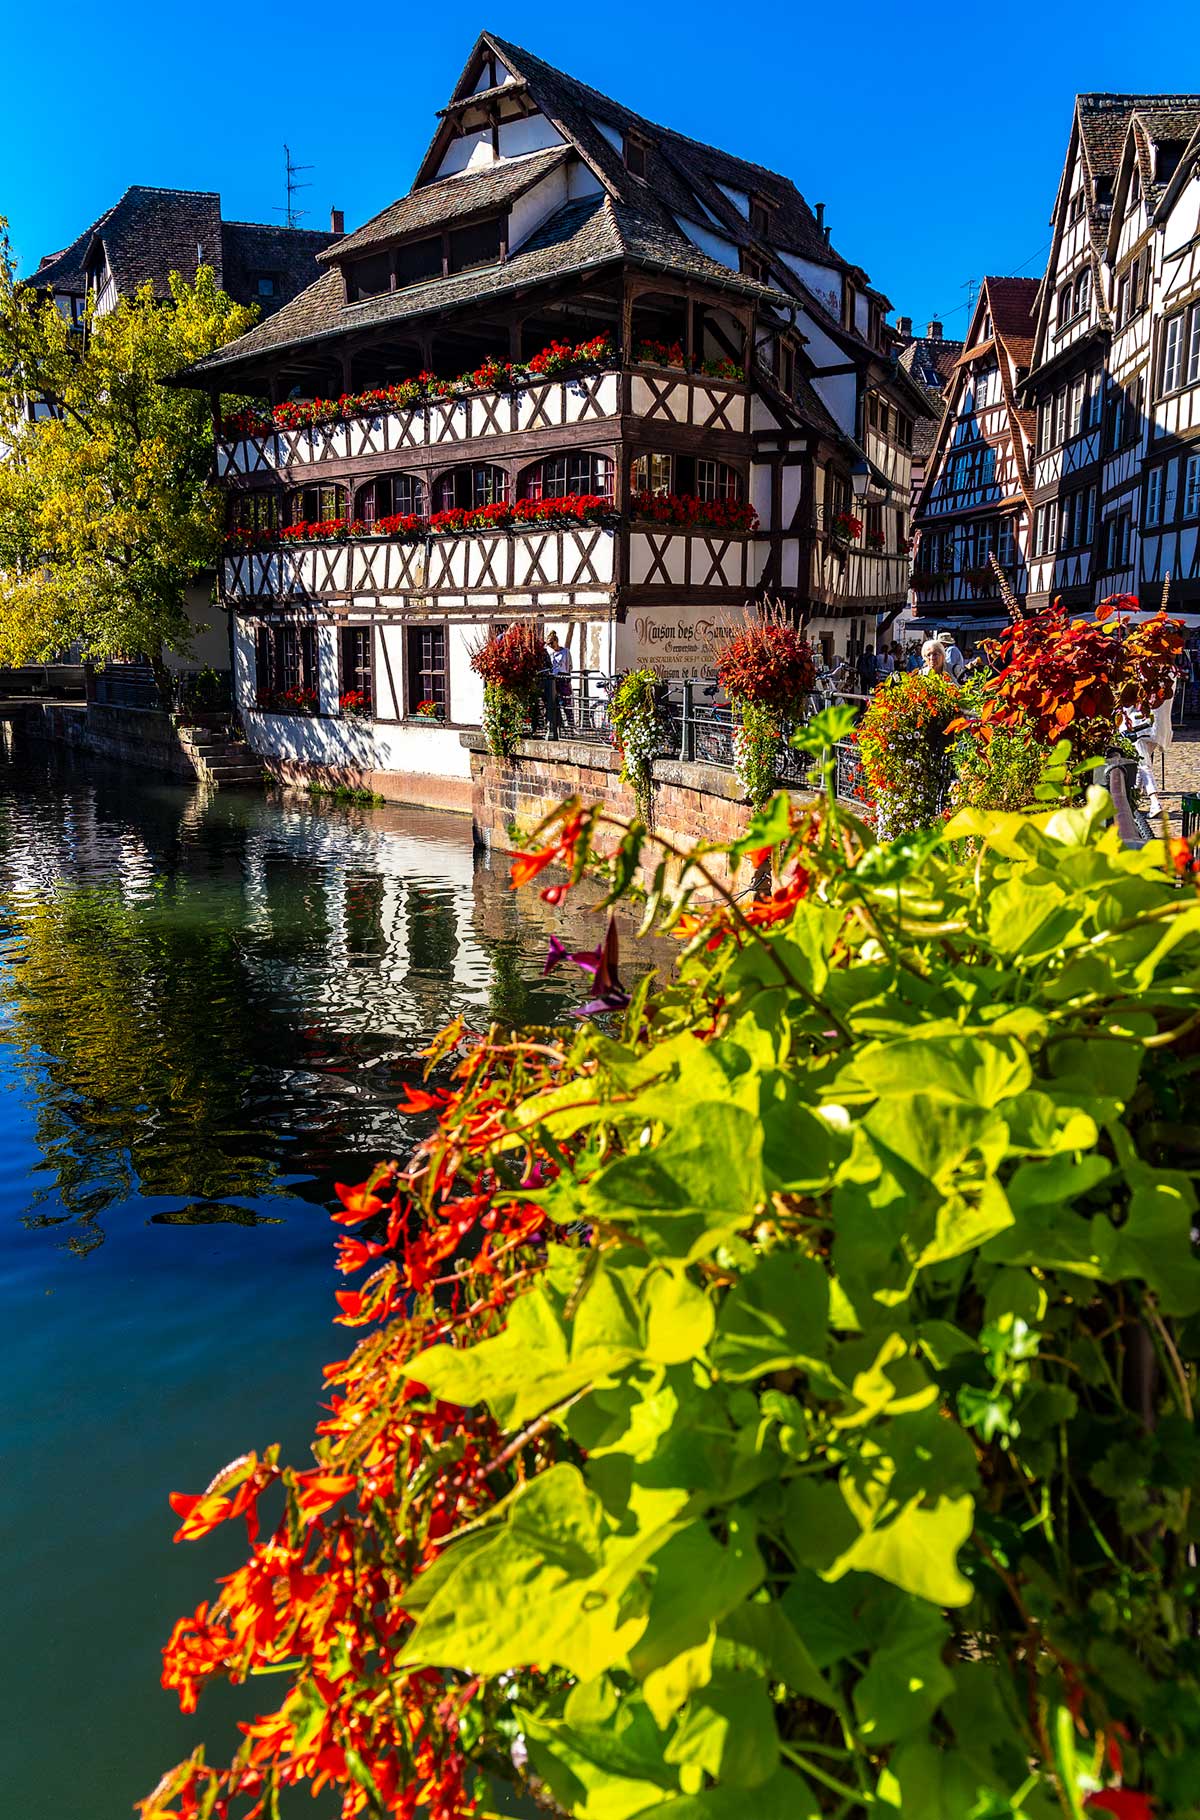 Flores coloridas enfeitam prédios medievais na cidade de Estrasburgo, na França